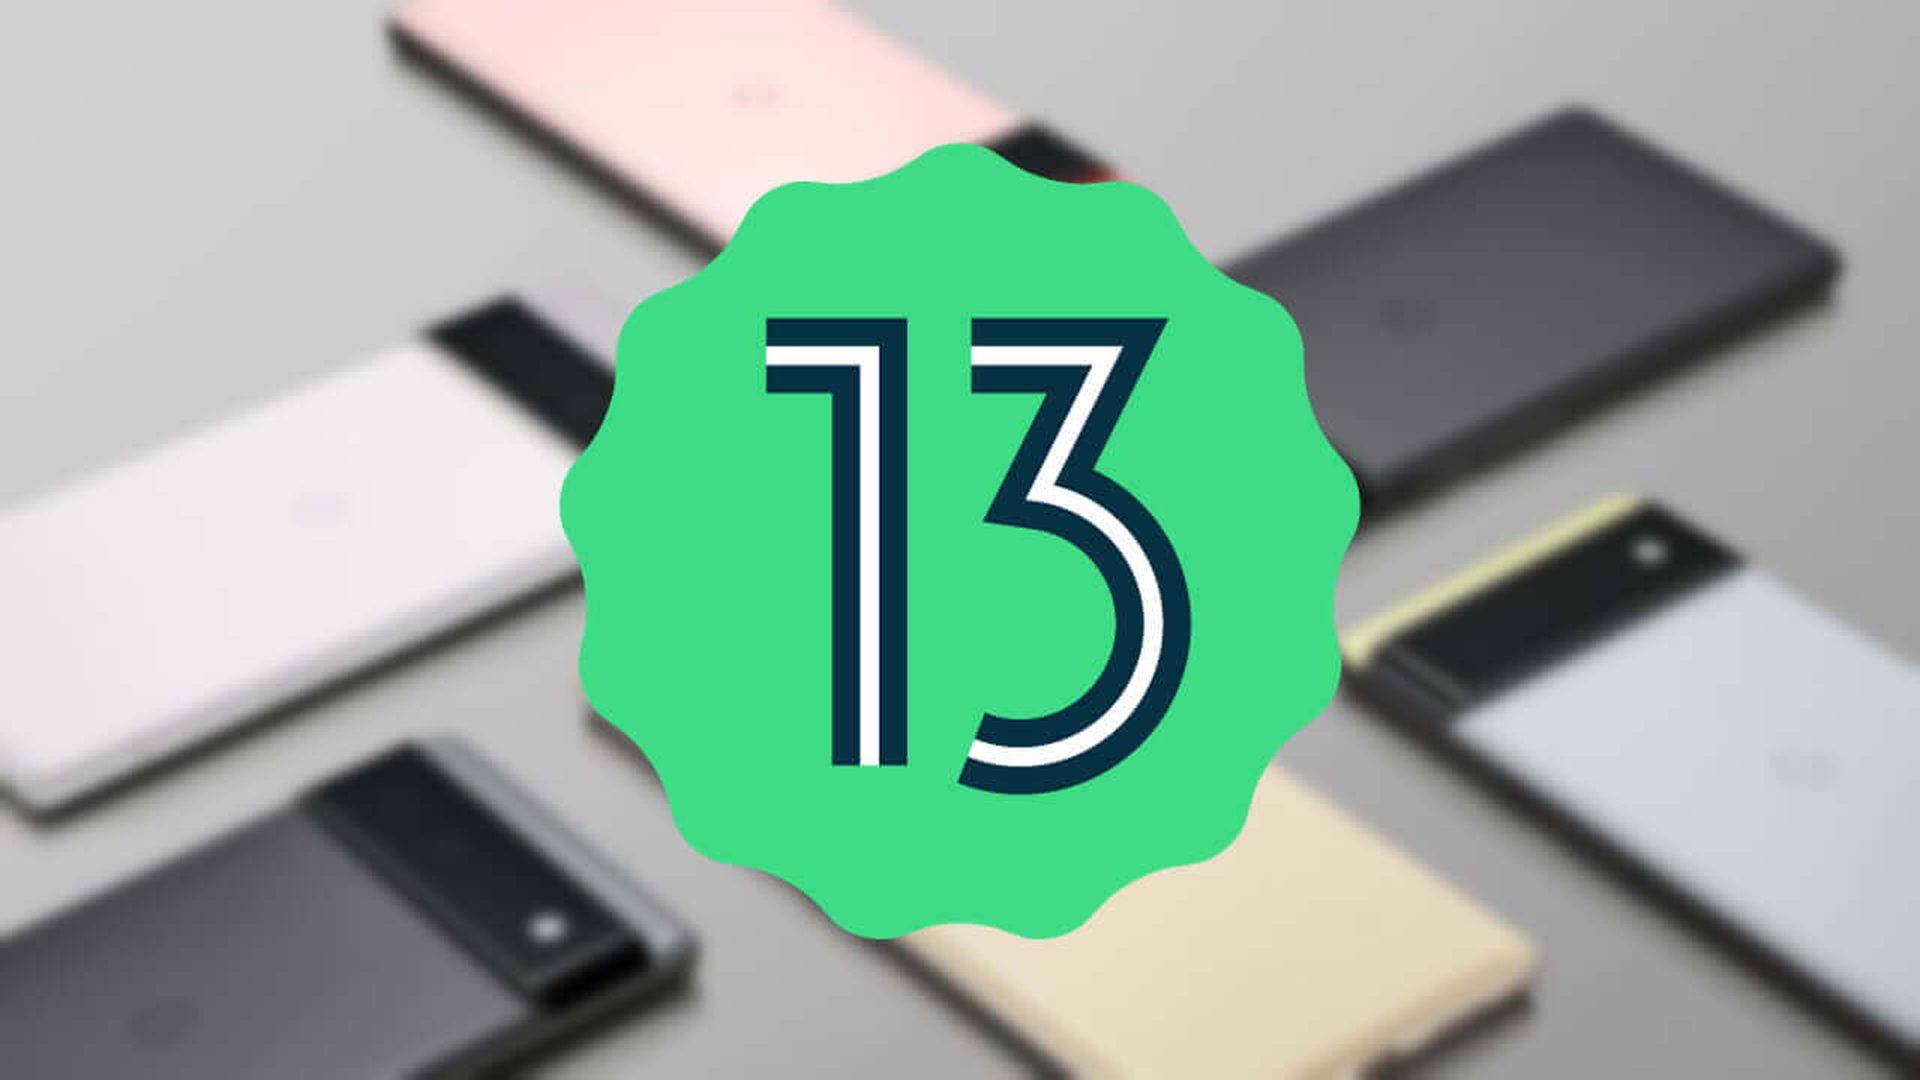 Saiu a versão beta do Android 13: novos recursos, dispositivos compatíveis e muito mais